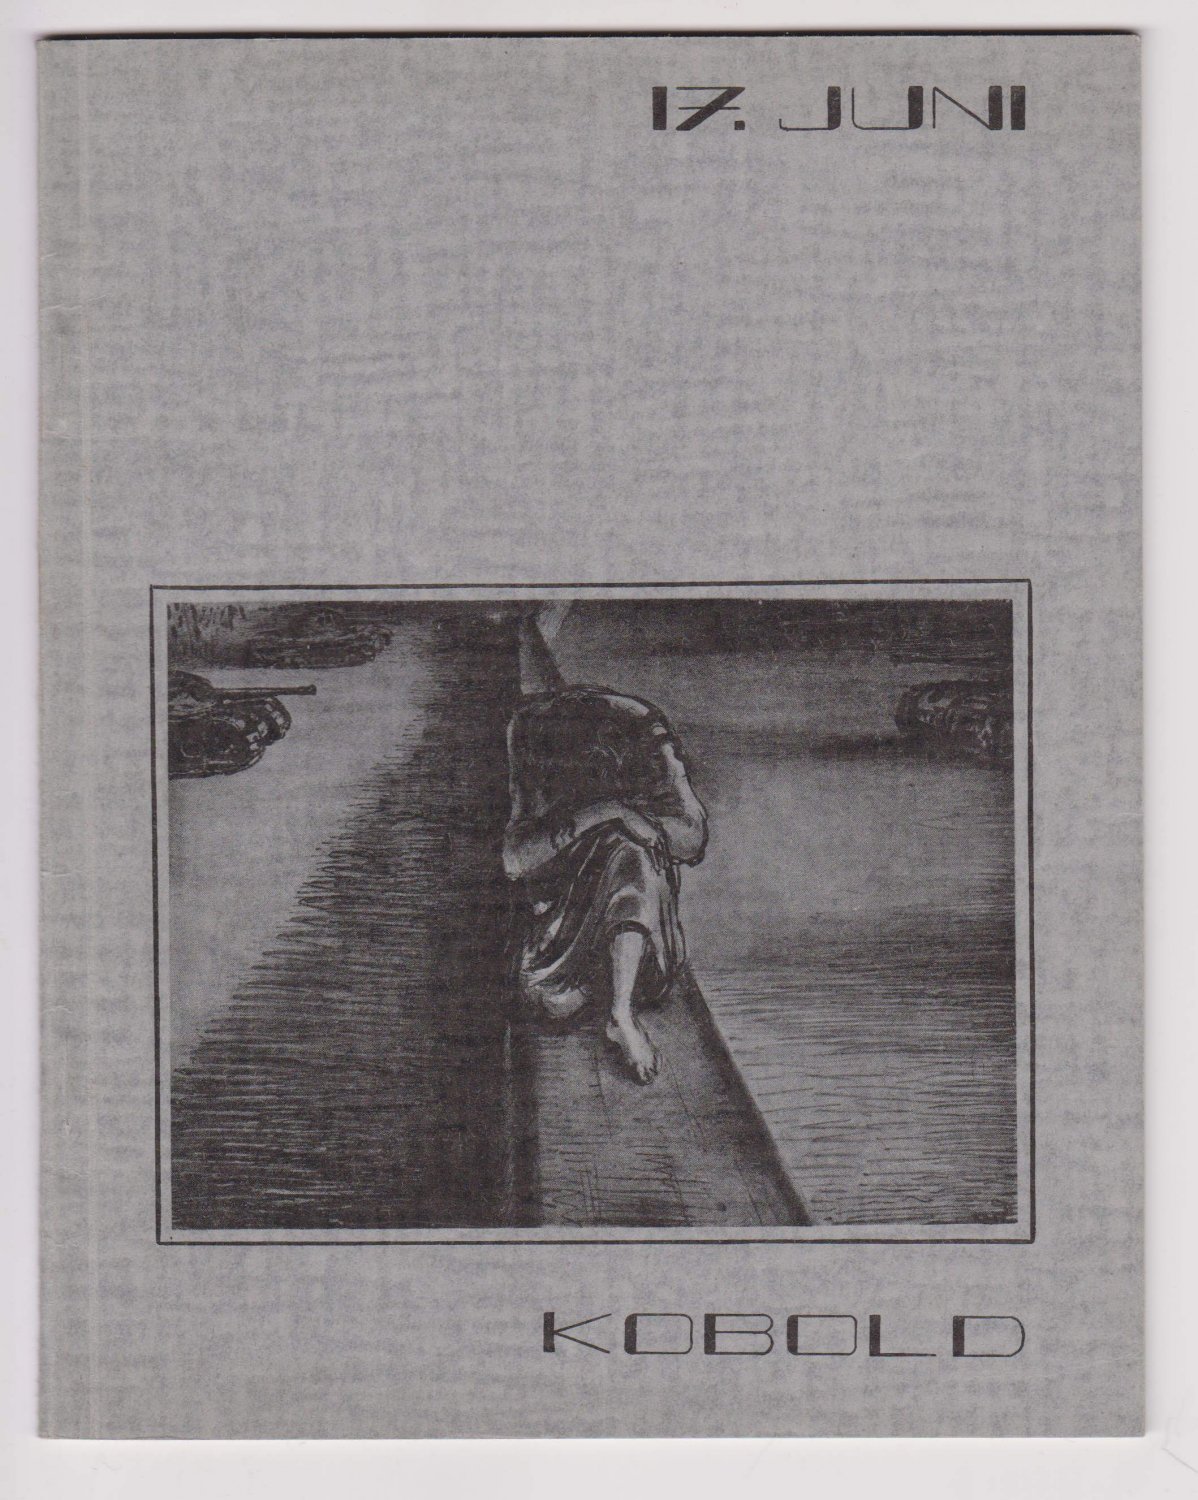 KOBOLD / SEILER, Rainer (Chefredakteur):  17. Juni. Kobold. Heft 3, Juni 1963. Studentenzeitschrift für Sprache + Grafik. 